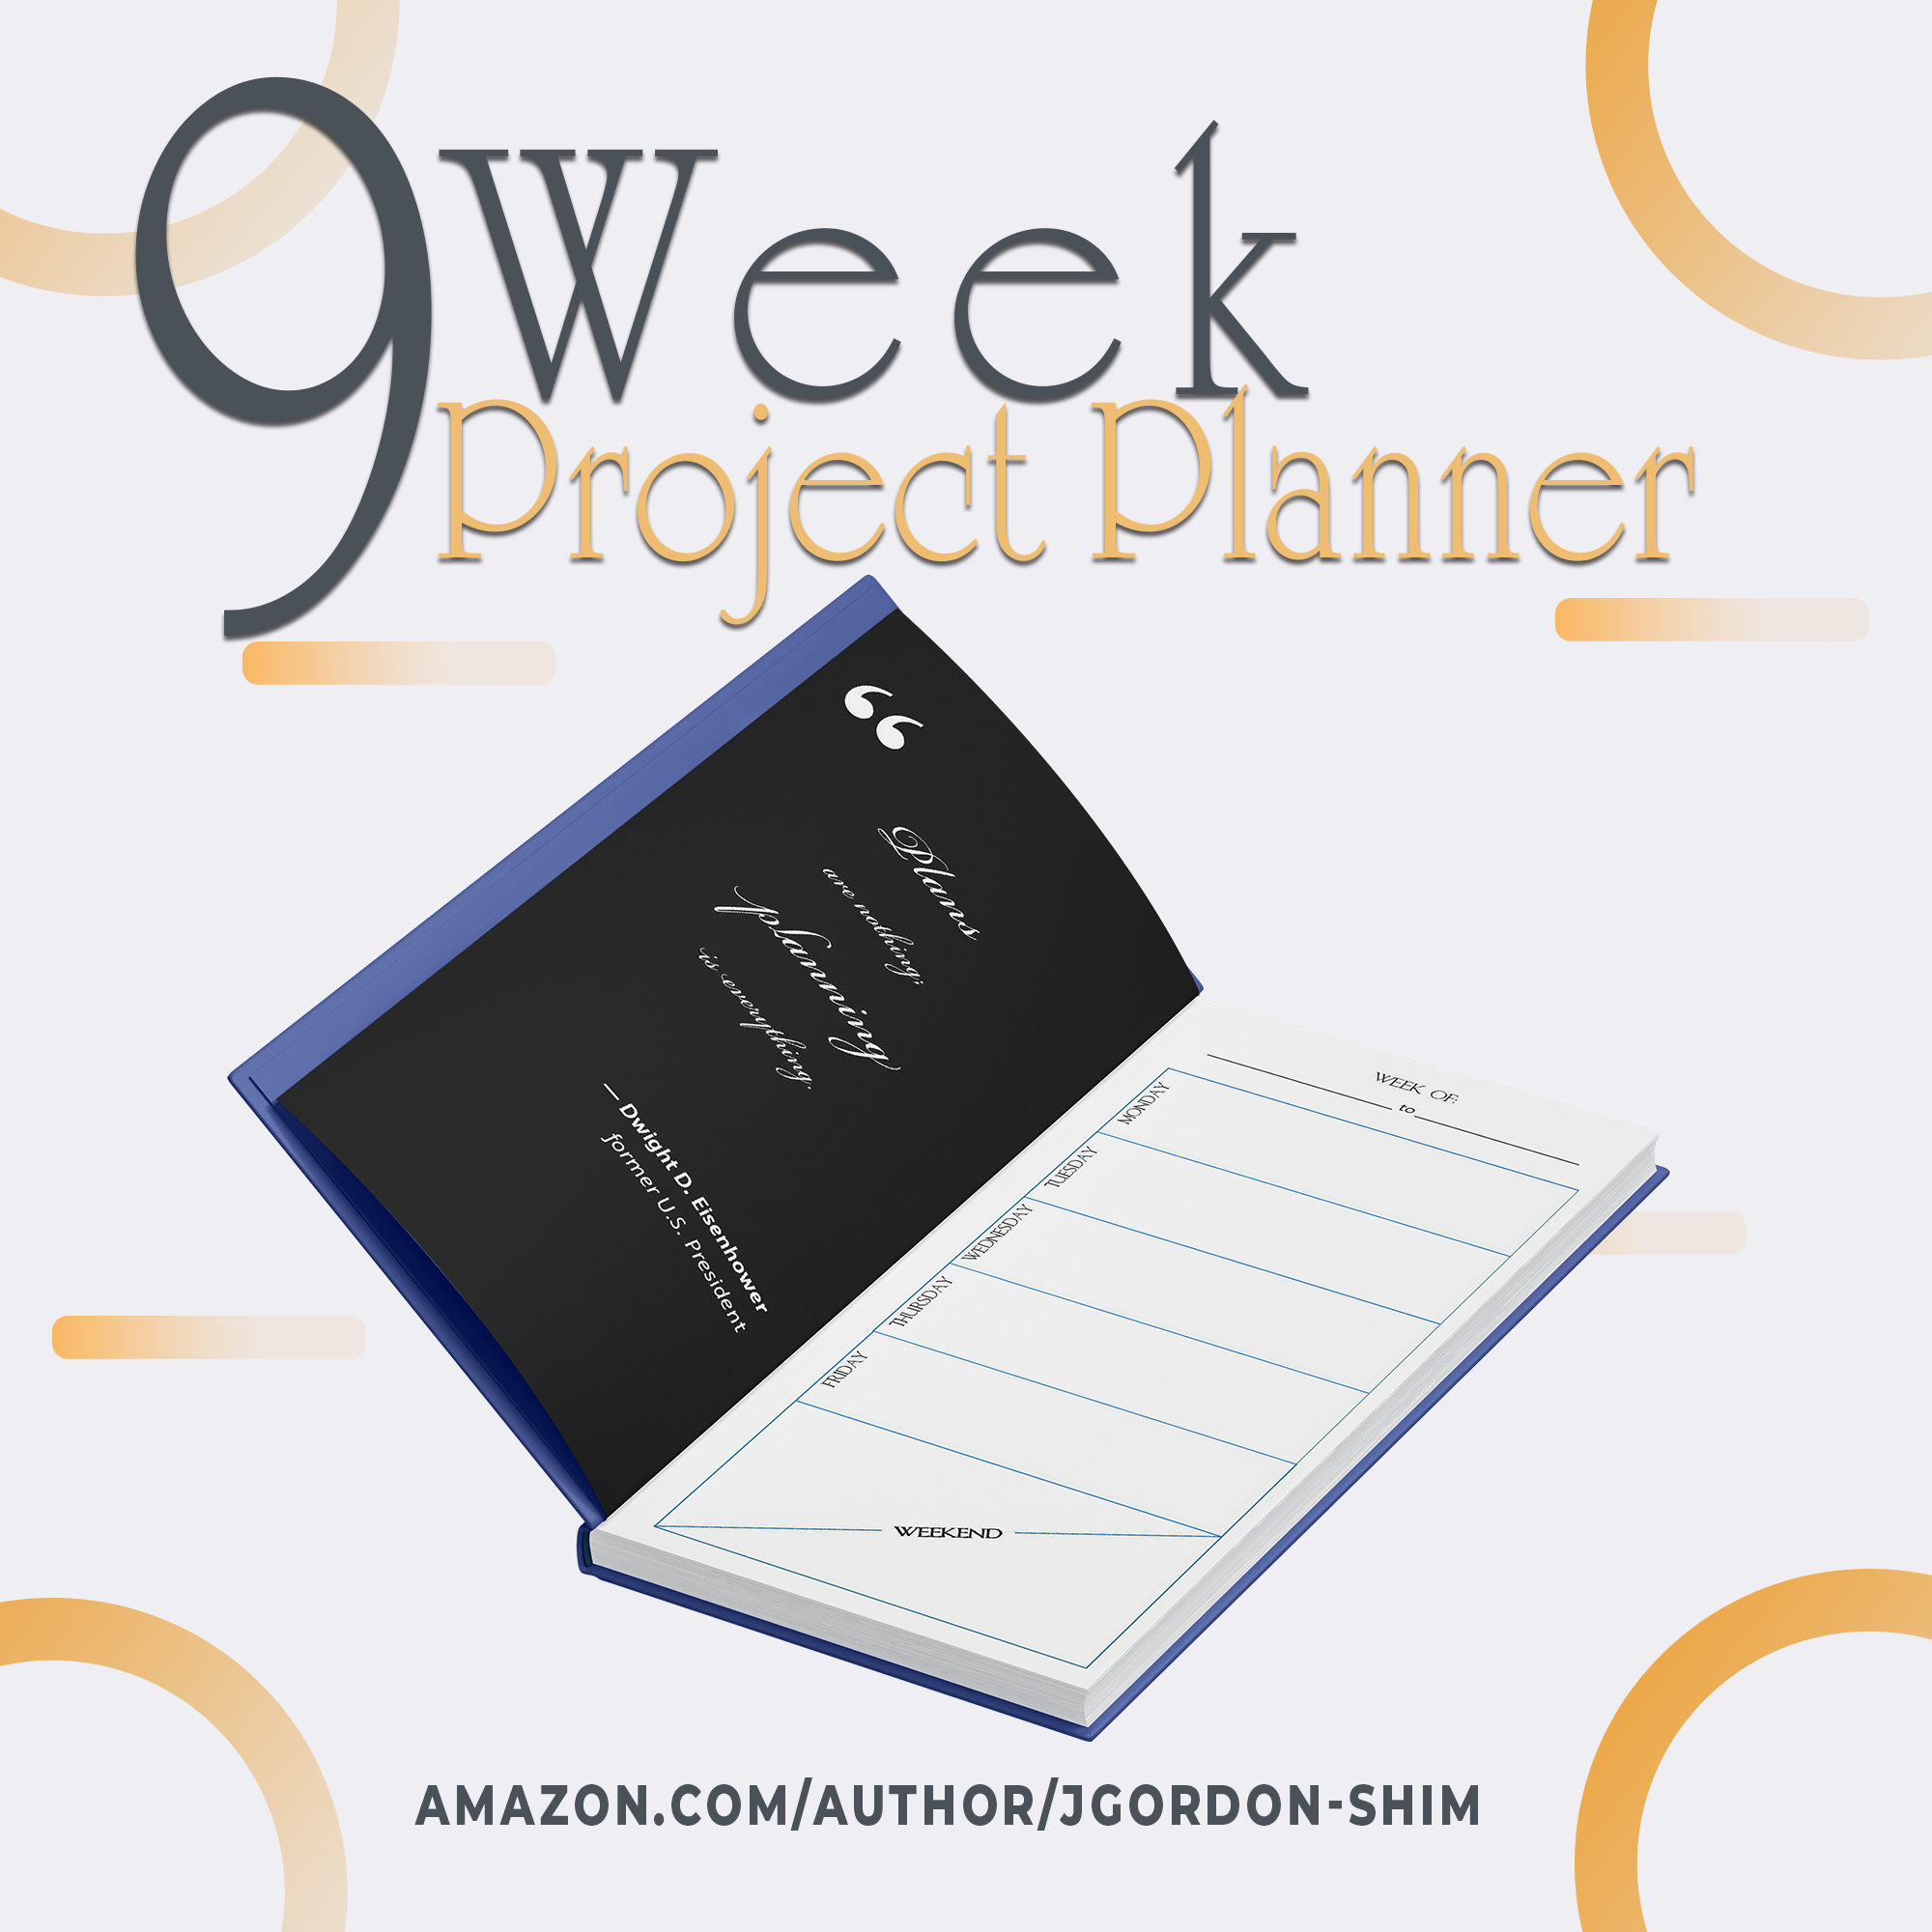 9 Week Project Planner